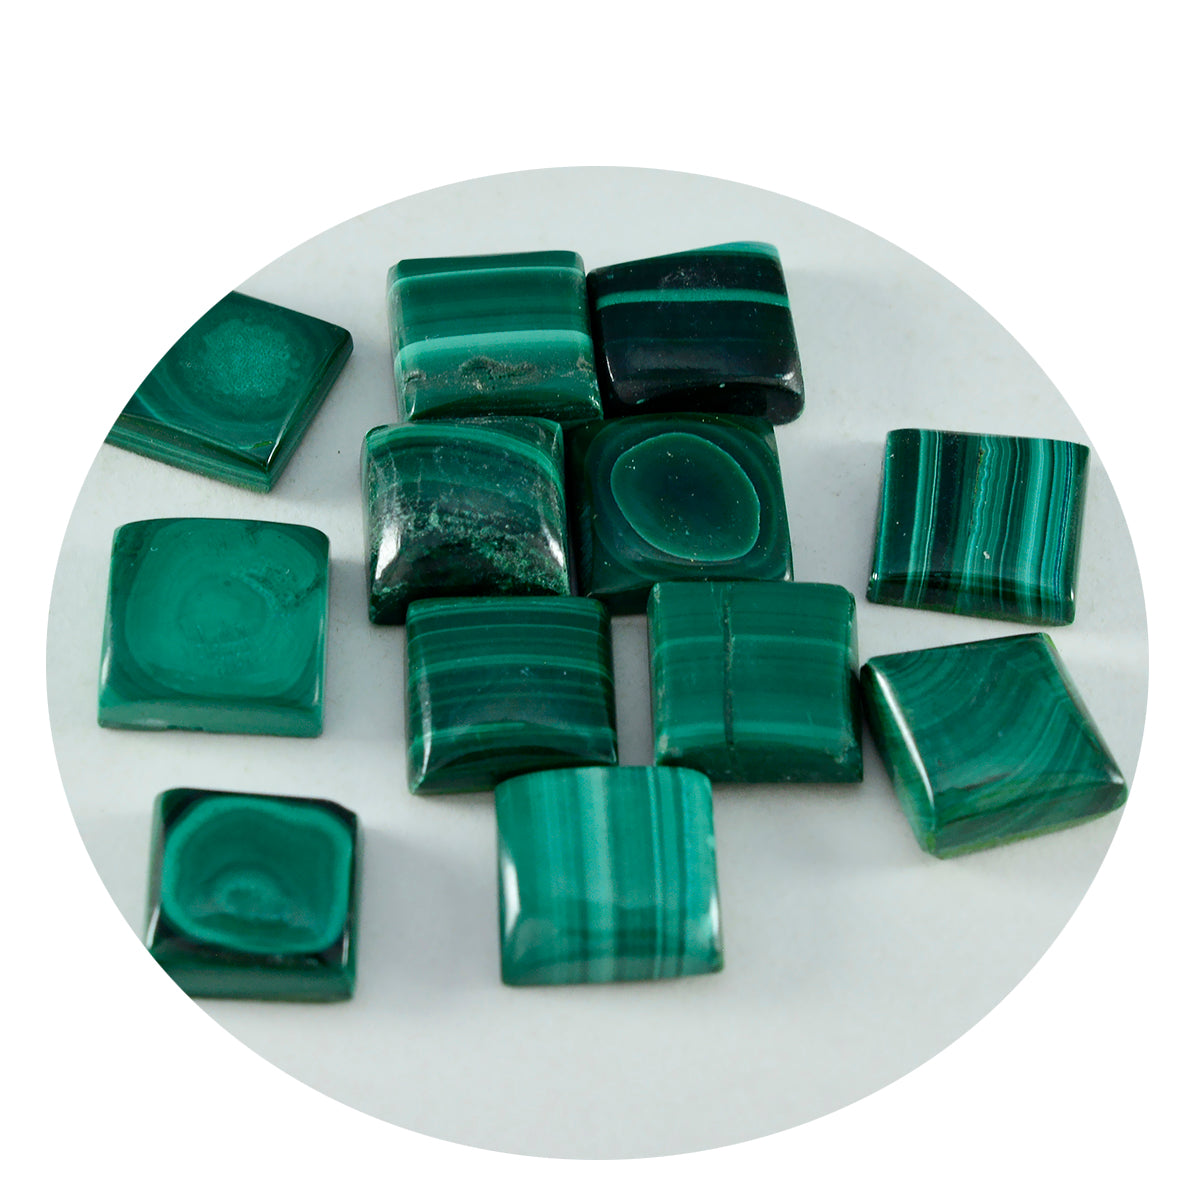 Riyogems 1PC Green Malachite Cabochon 8x8 mm Square Shape cute Quality Stone